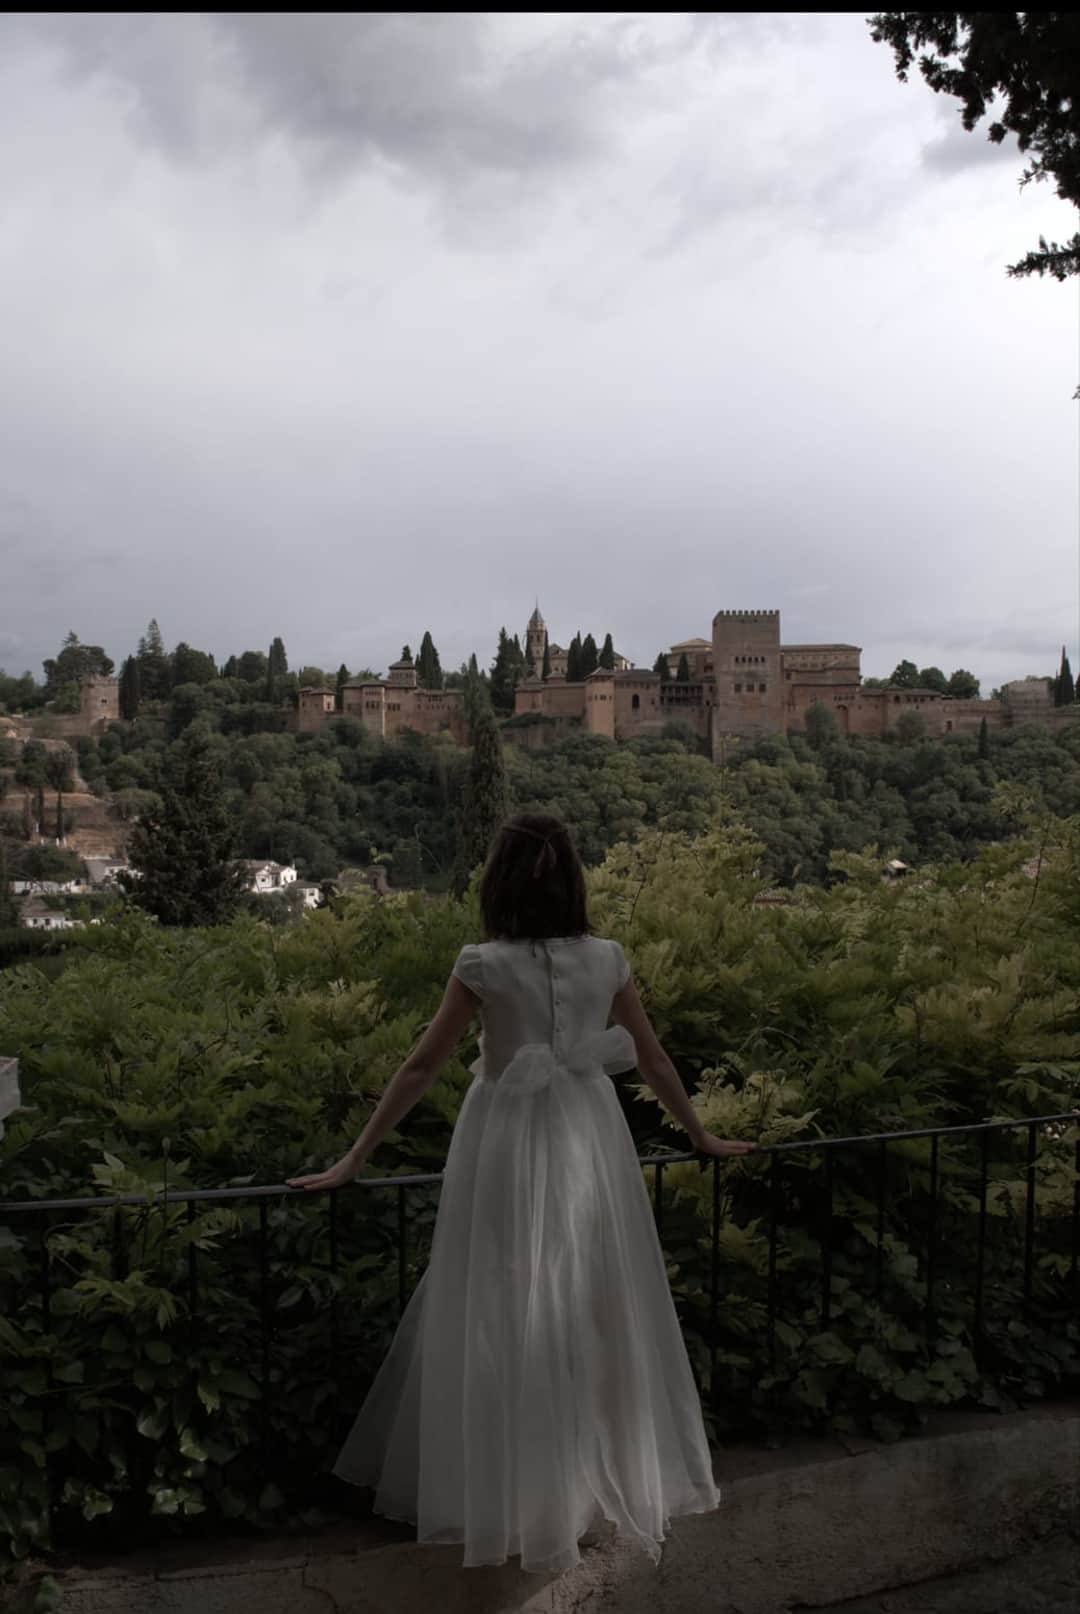 Fotografía de una niña de comunión de espaldas apoyada en una barandilla mirando la Alhambra